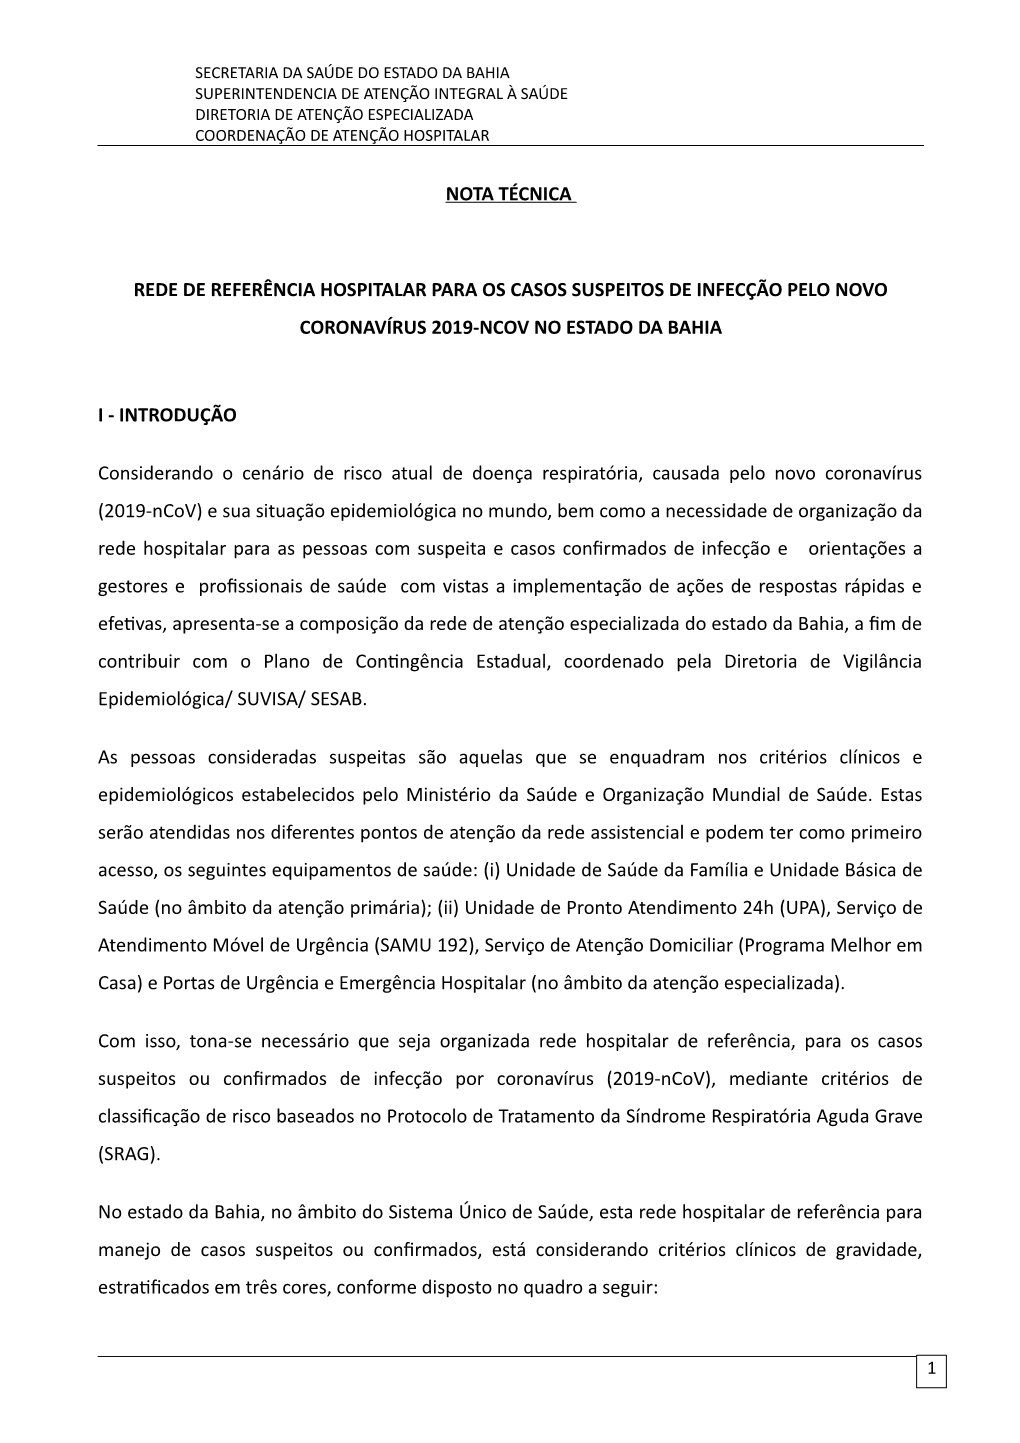 Rede De Referência Hospitalar Para Os Casos Suspeitos De Infecção Pelo Novo Coronavírus 2019-Ncov No Estado Da Bahia